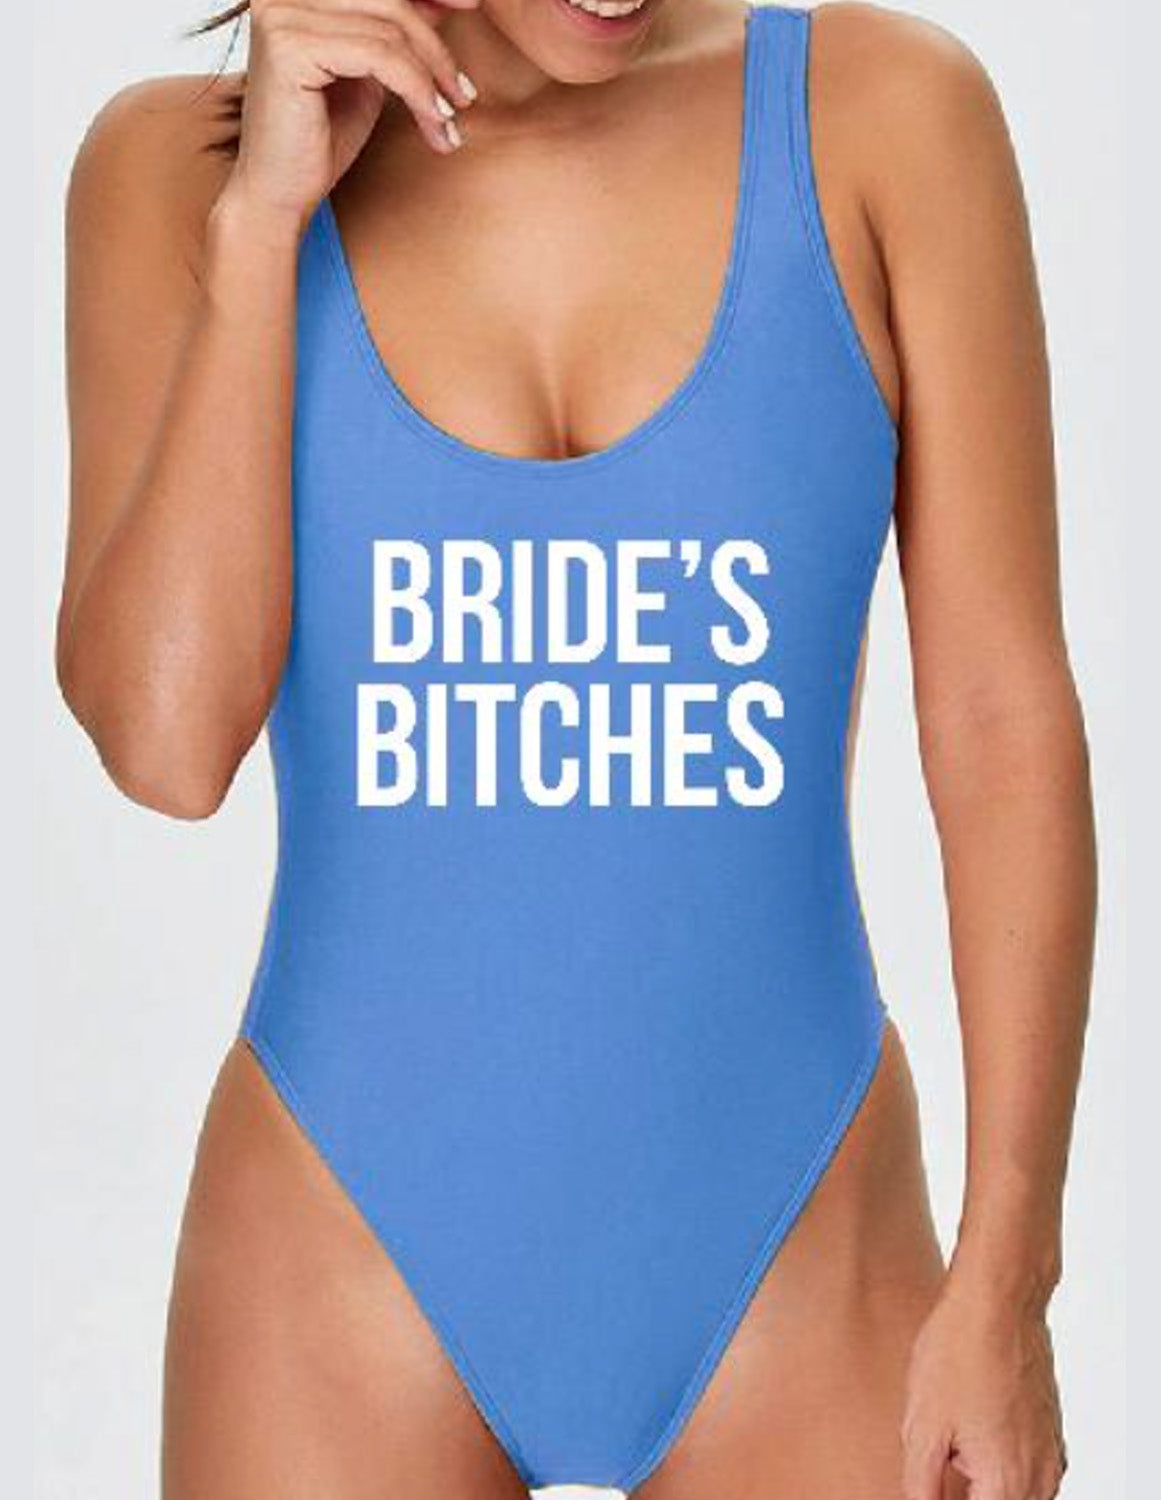 Bride & Bride's Bitches Bride Swimsuit